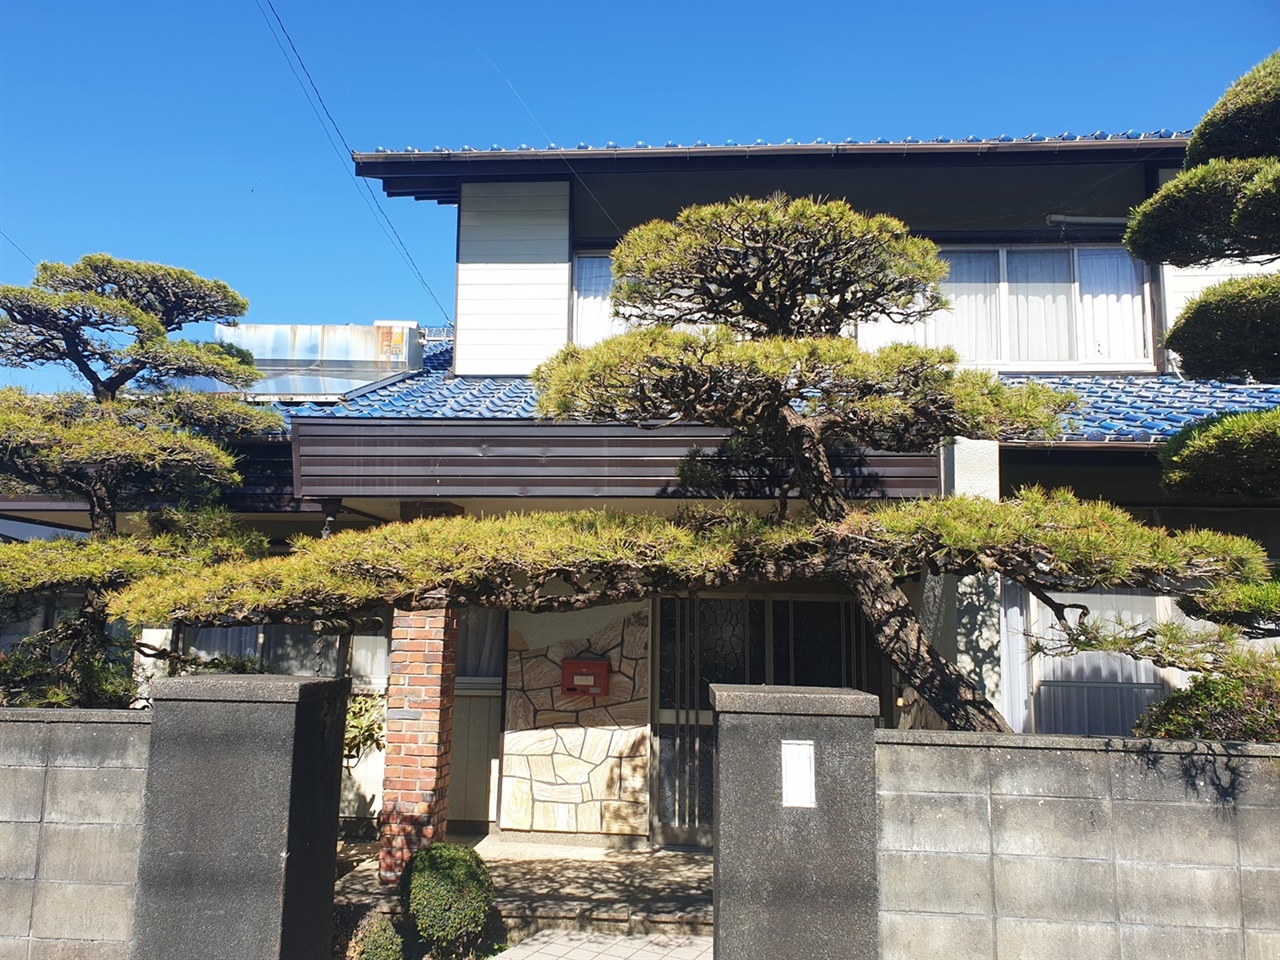 일본식 정원에서는 문의 옆에 문관목을 심어 문 주위에 풍격을 주고, 배경인 주택과 조화시키는 궁리를 해왔죠.